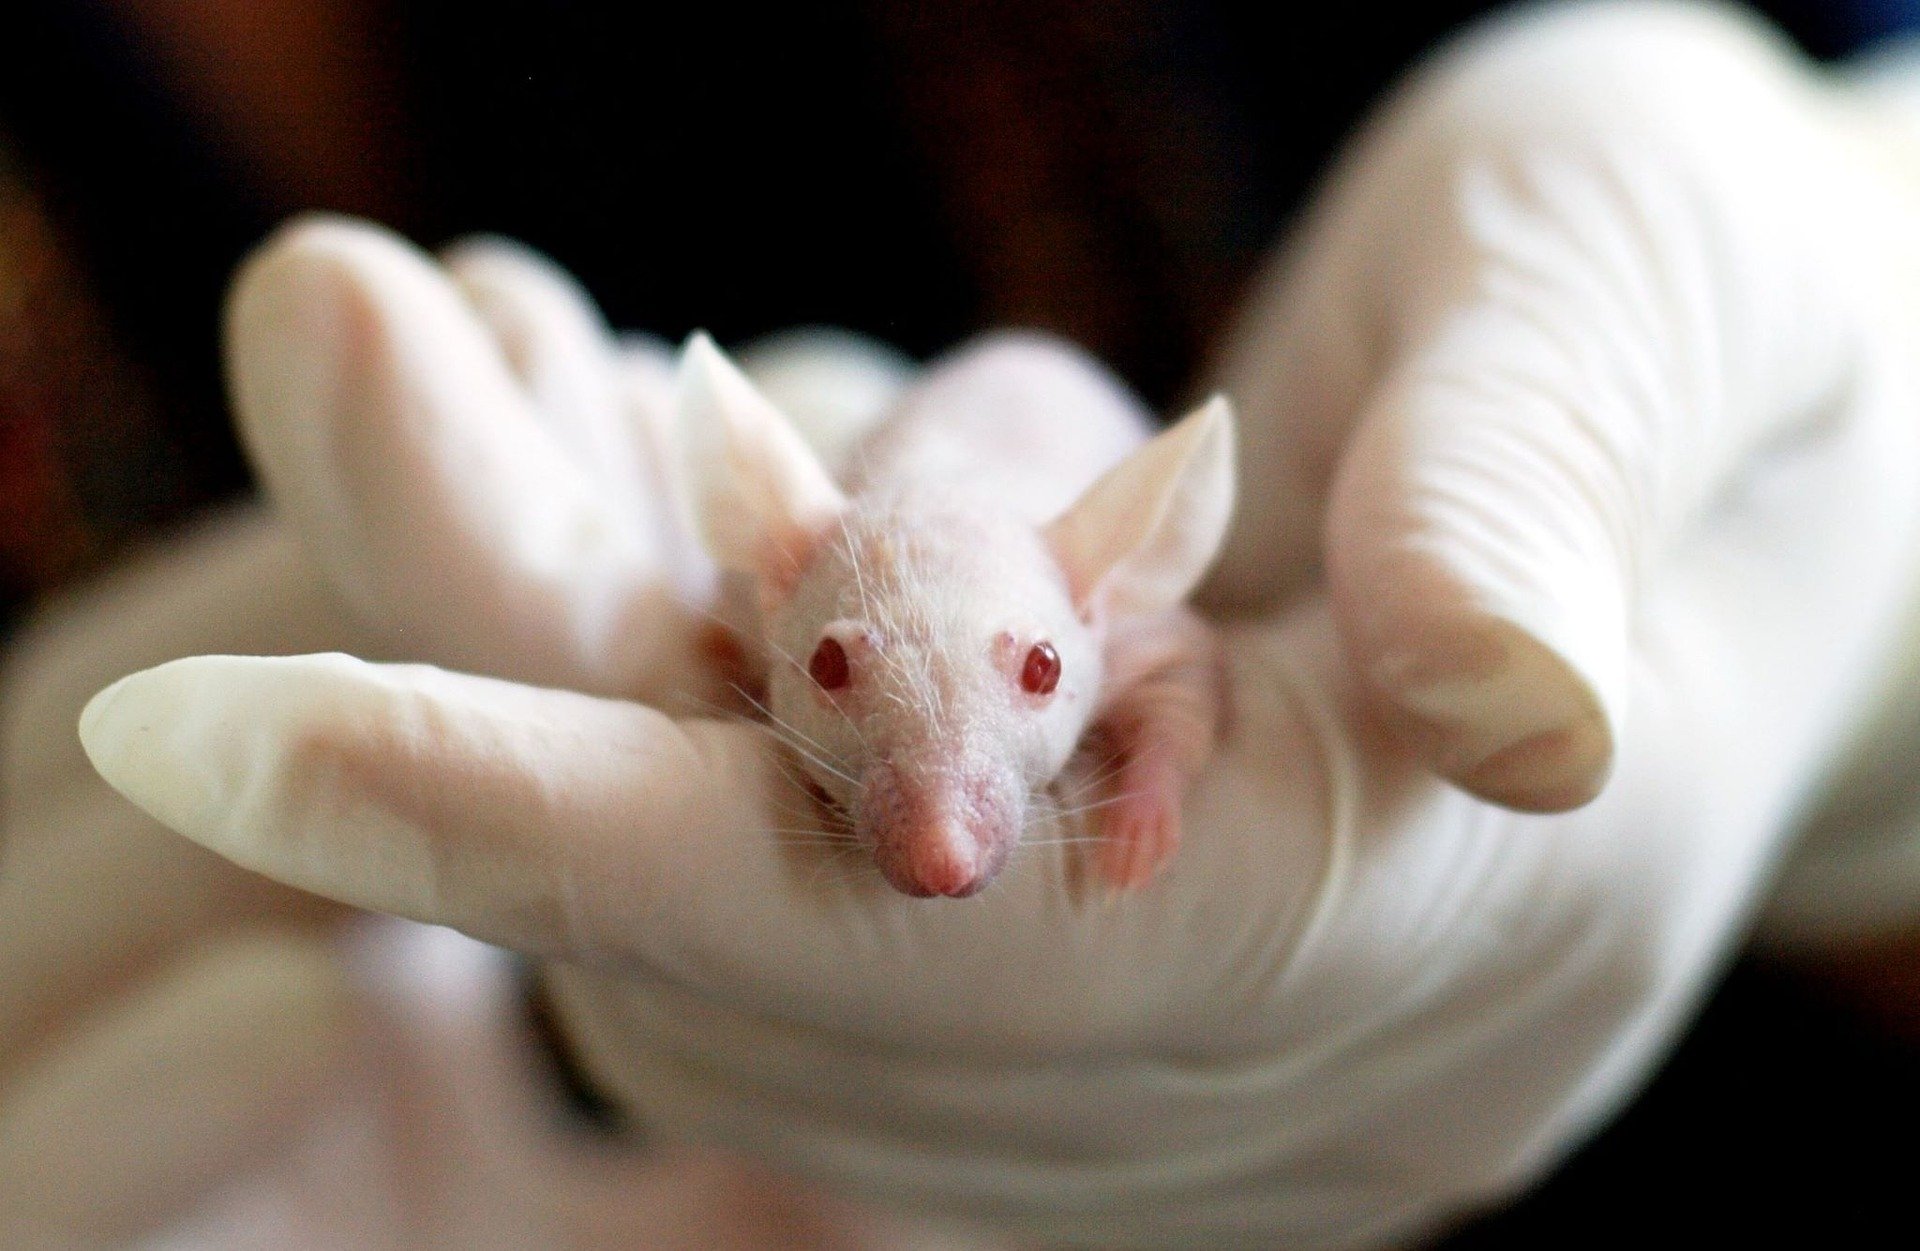 Θα γίνει η Ελβετία η πρώτη χώρα χωρίς ιατρικές δοκιμές σε ζώα;